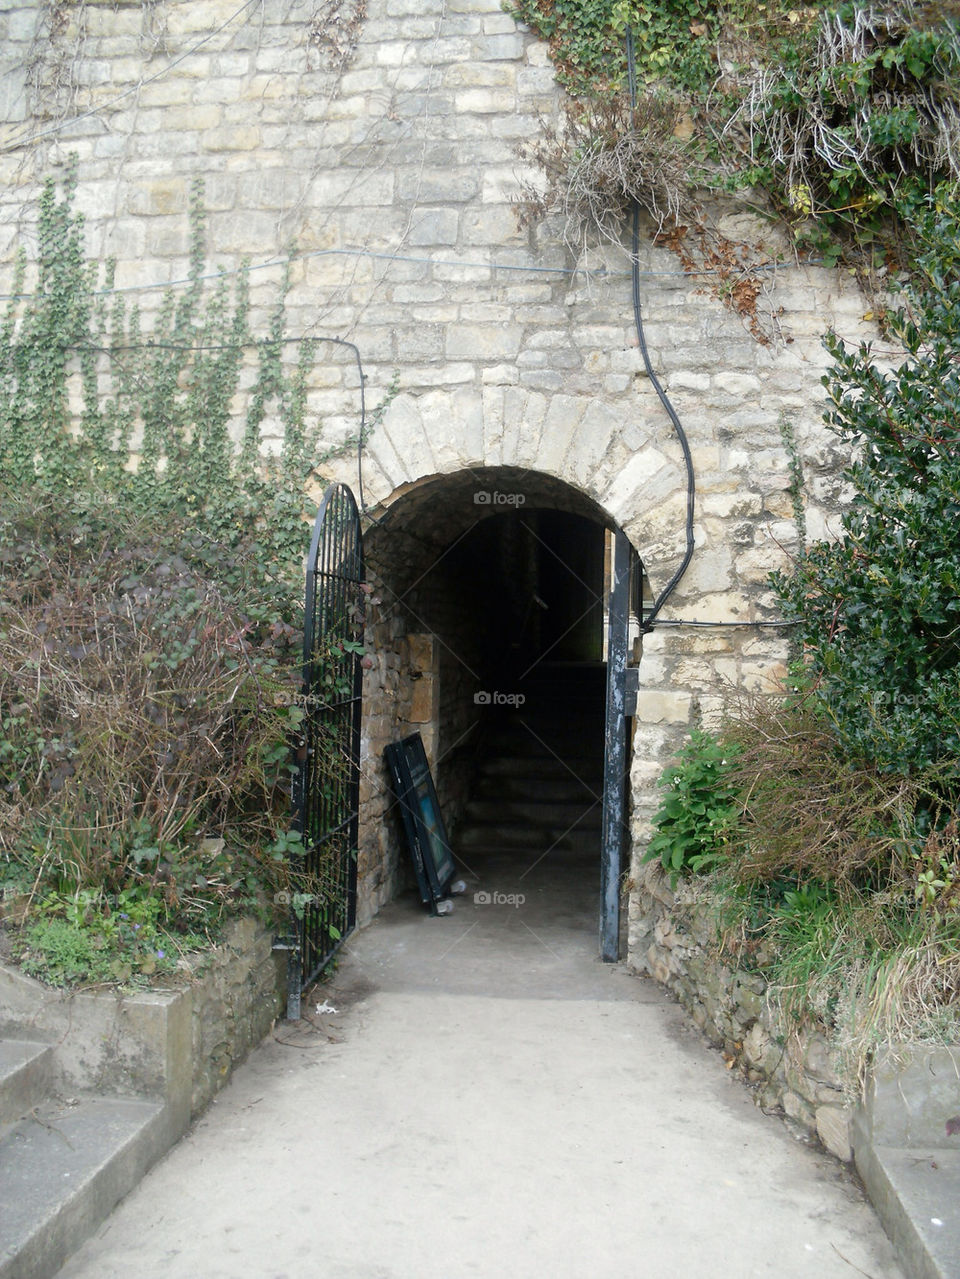 tunnel castle lincoln by strddyeddy